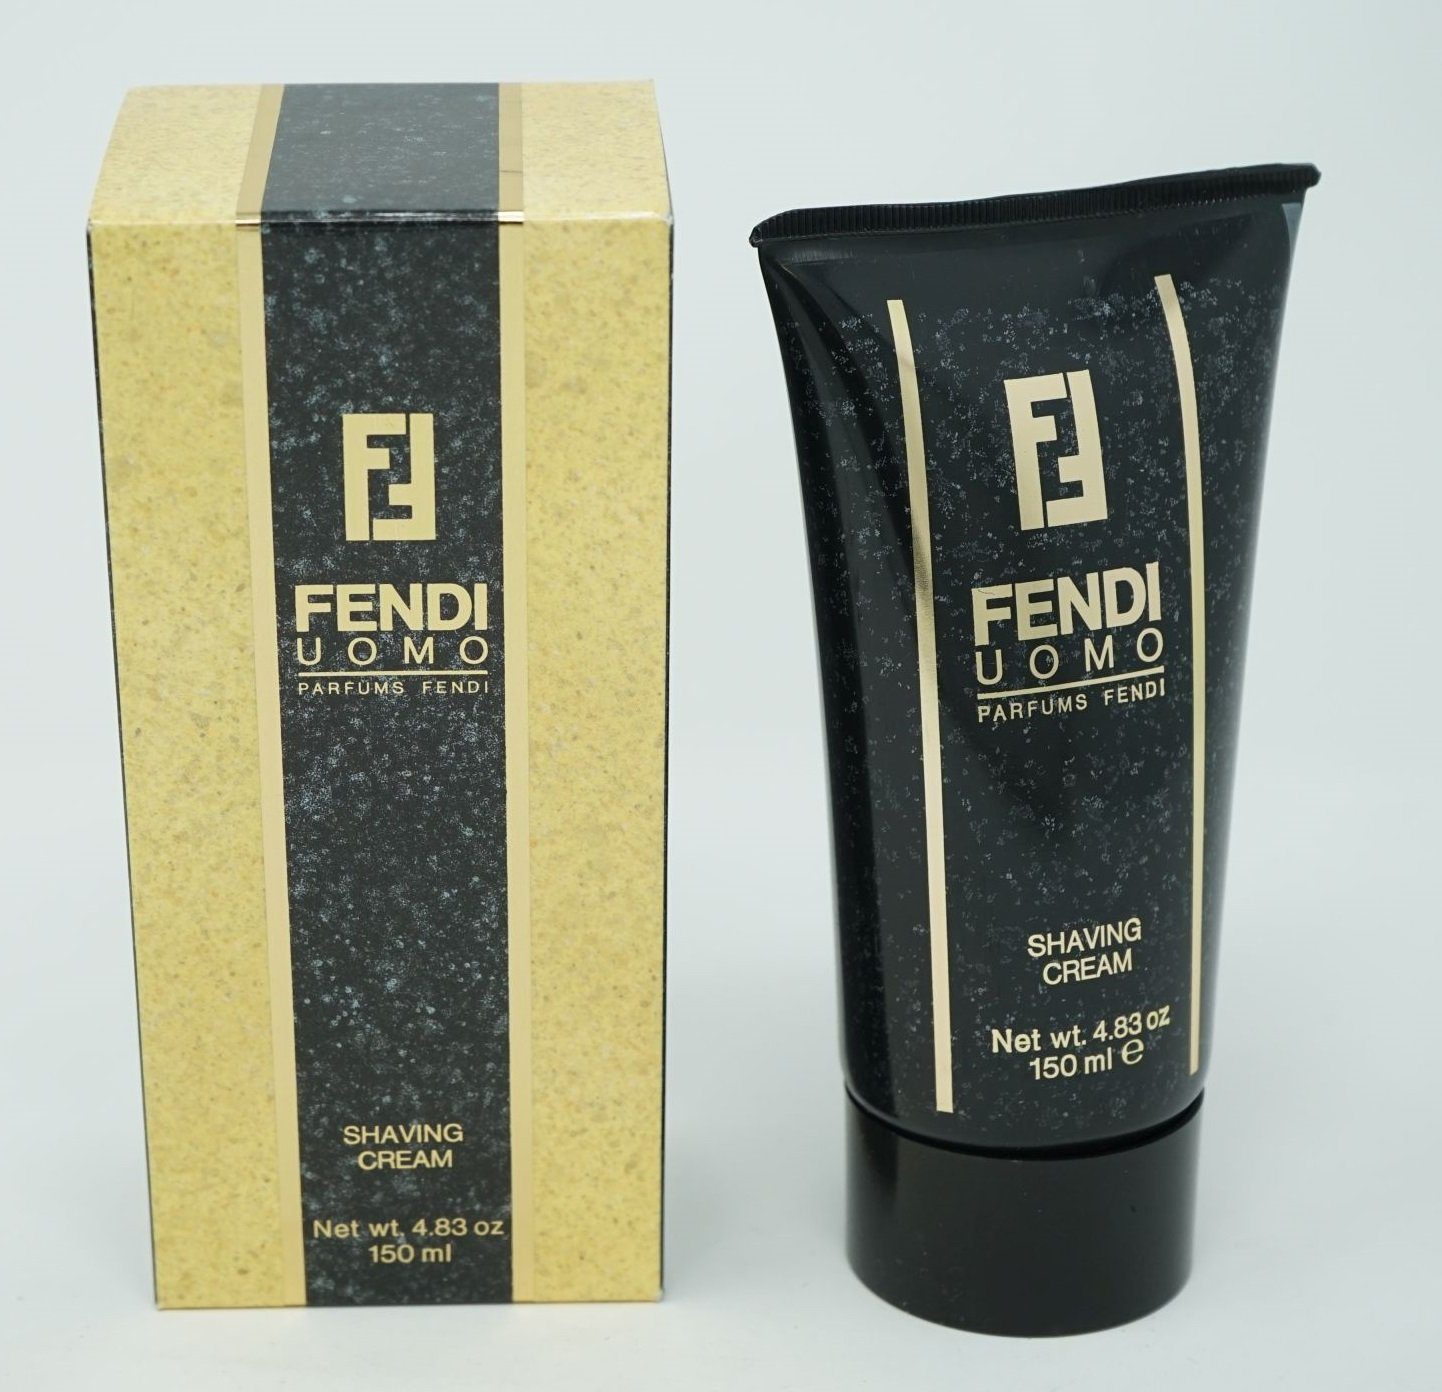 FENDI Eau Uomo Shaving Fendi 150 Cream de ml Toilette